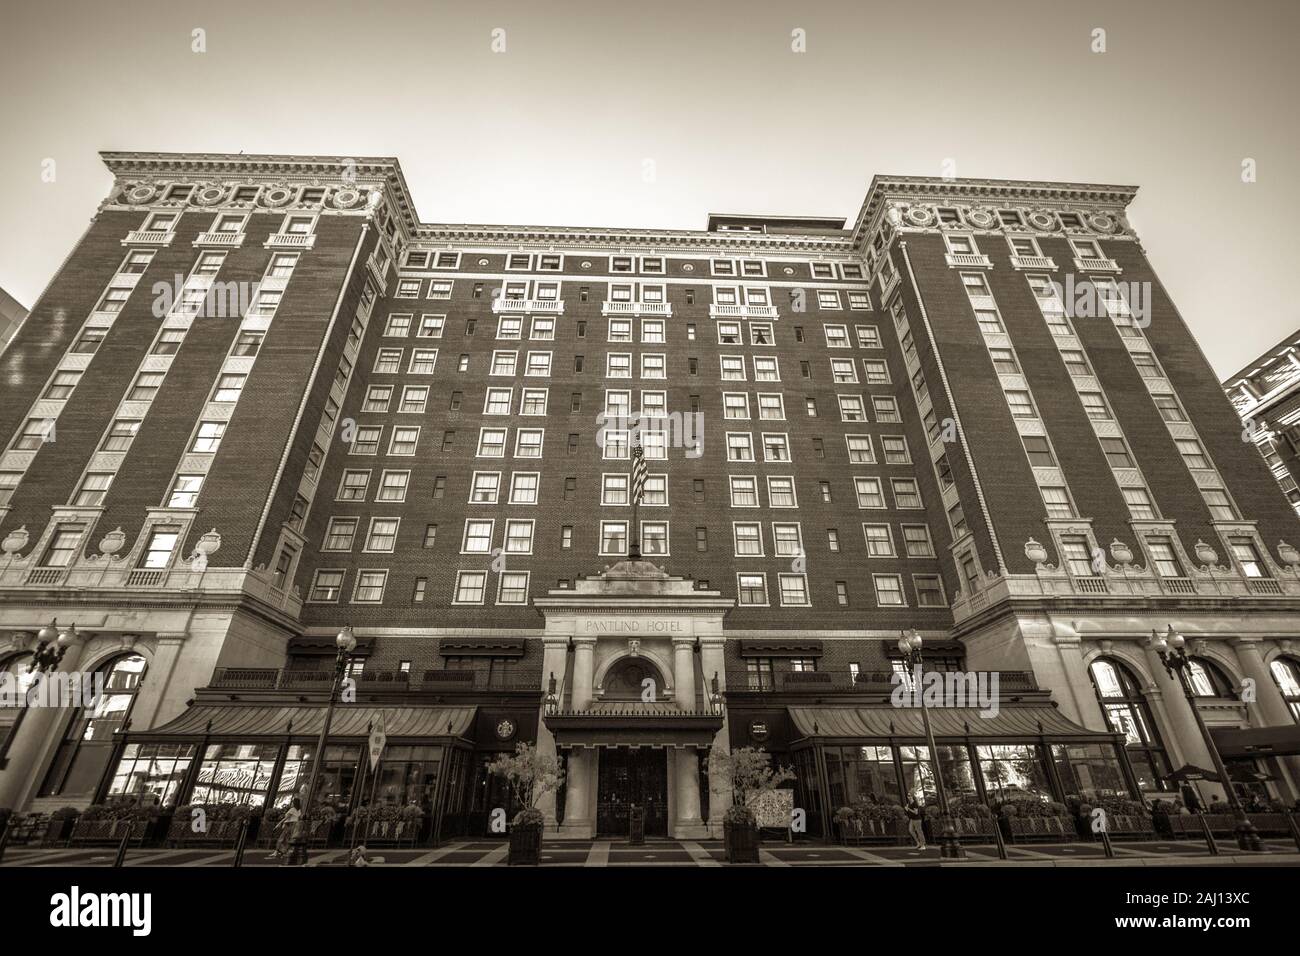 Grand Rapids, Michigan, Stati Uniti d'America - 17 Settembre 2016: la storica Amway Grand Plaza Hotel è un lussuoso hotel a quattro stelle di proprietà della catena alberghiera Hilton. Foto Stock